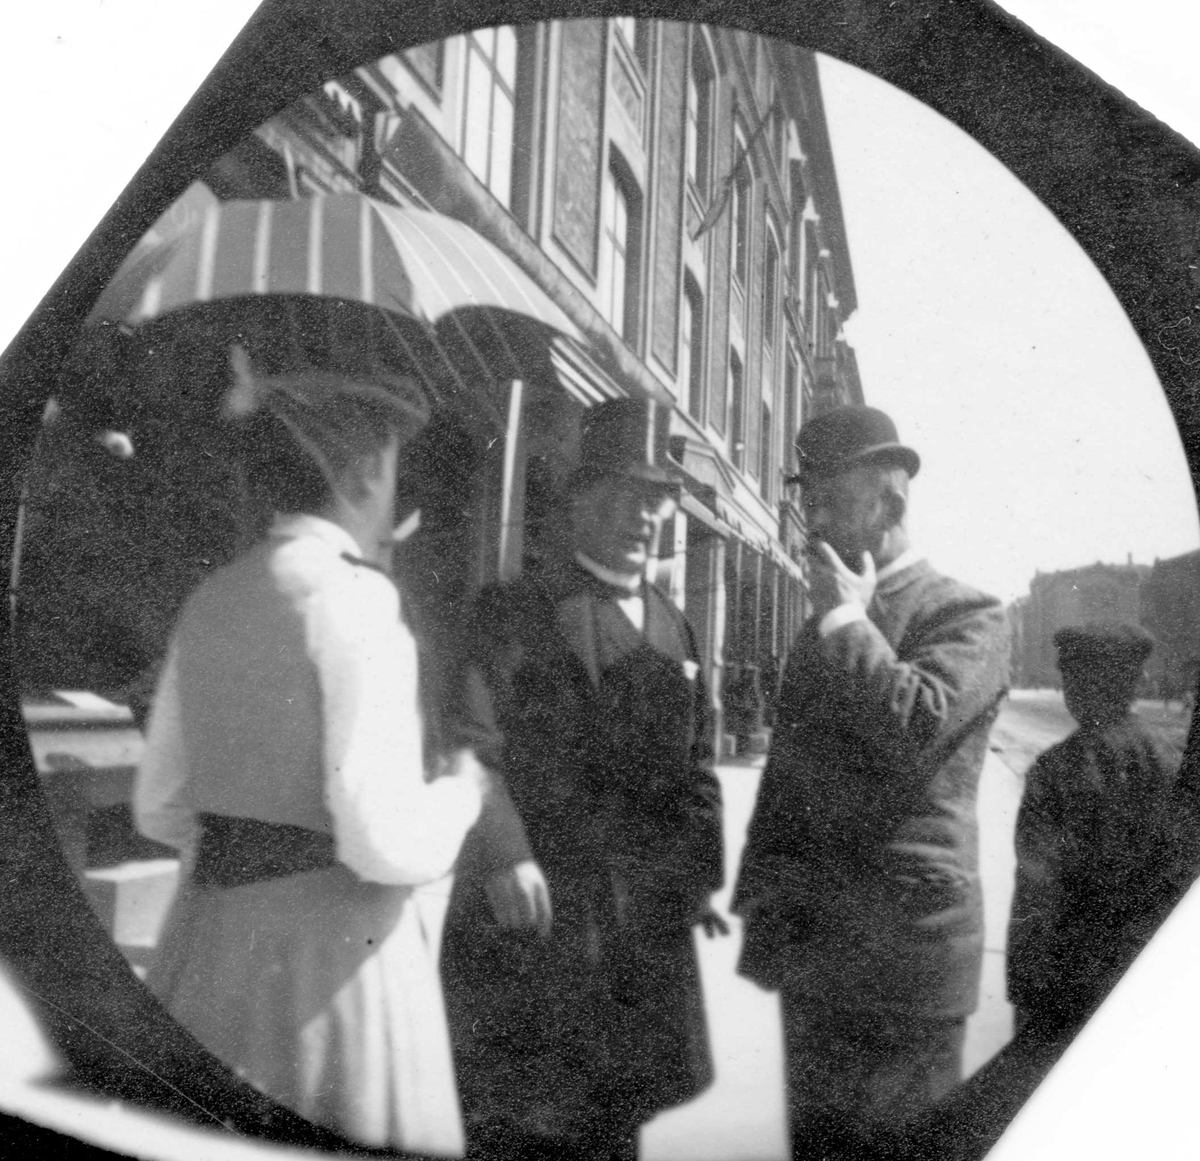 Professor Blytt, en mann og en kvinne prater på Karl Johans gate, Oslo. Stortinget skimtes i bakgrunnen.